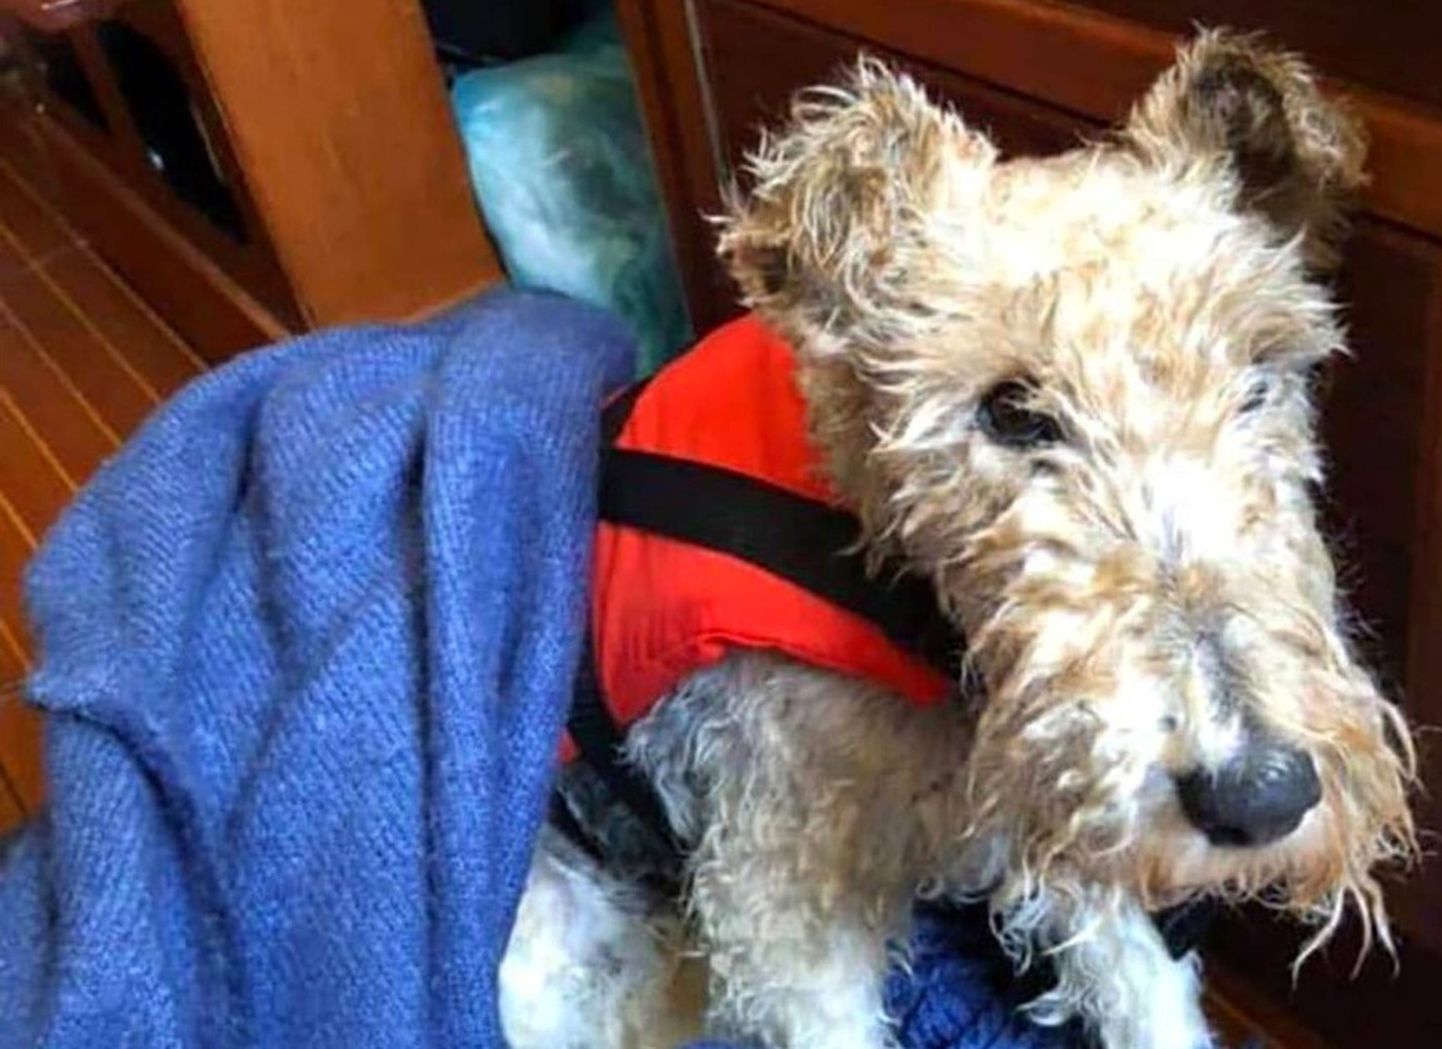 Soome purjetaja päästis Airisto lähedal meres ujunud koera